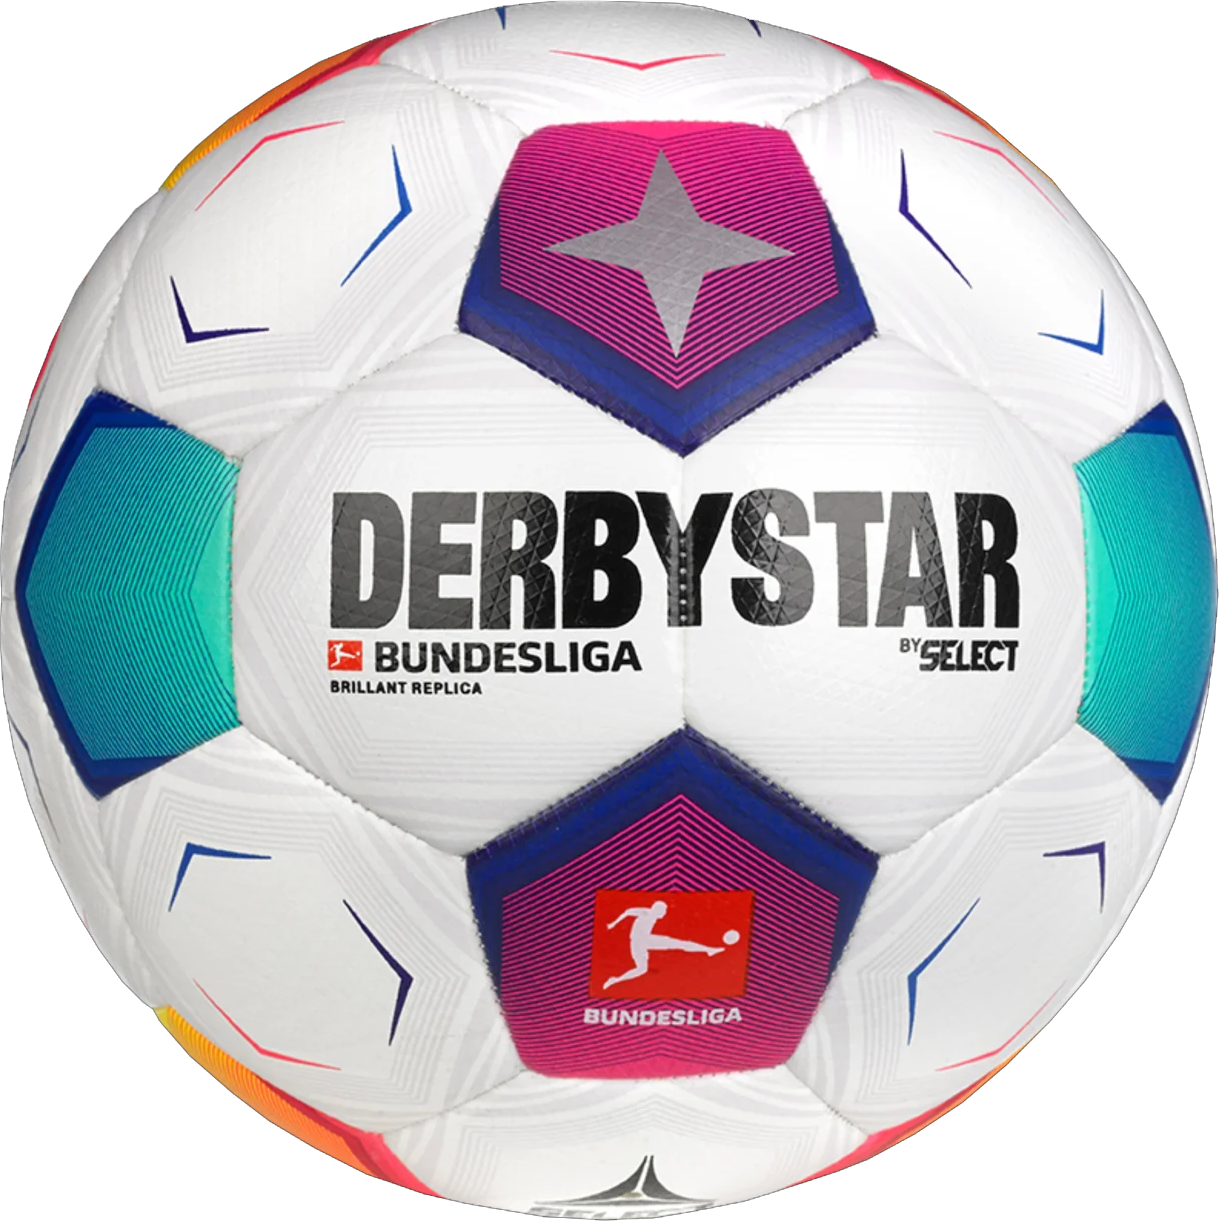 Minge Derbystar Bundesliga Brillant Replica v23